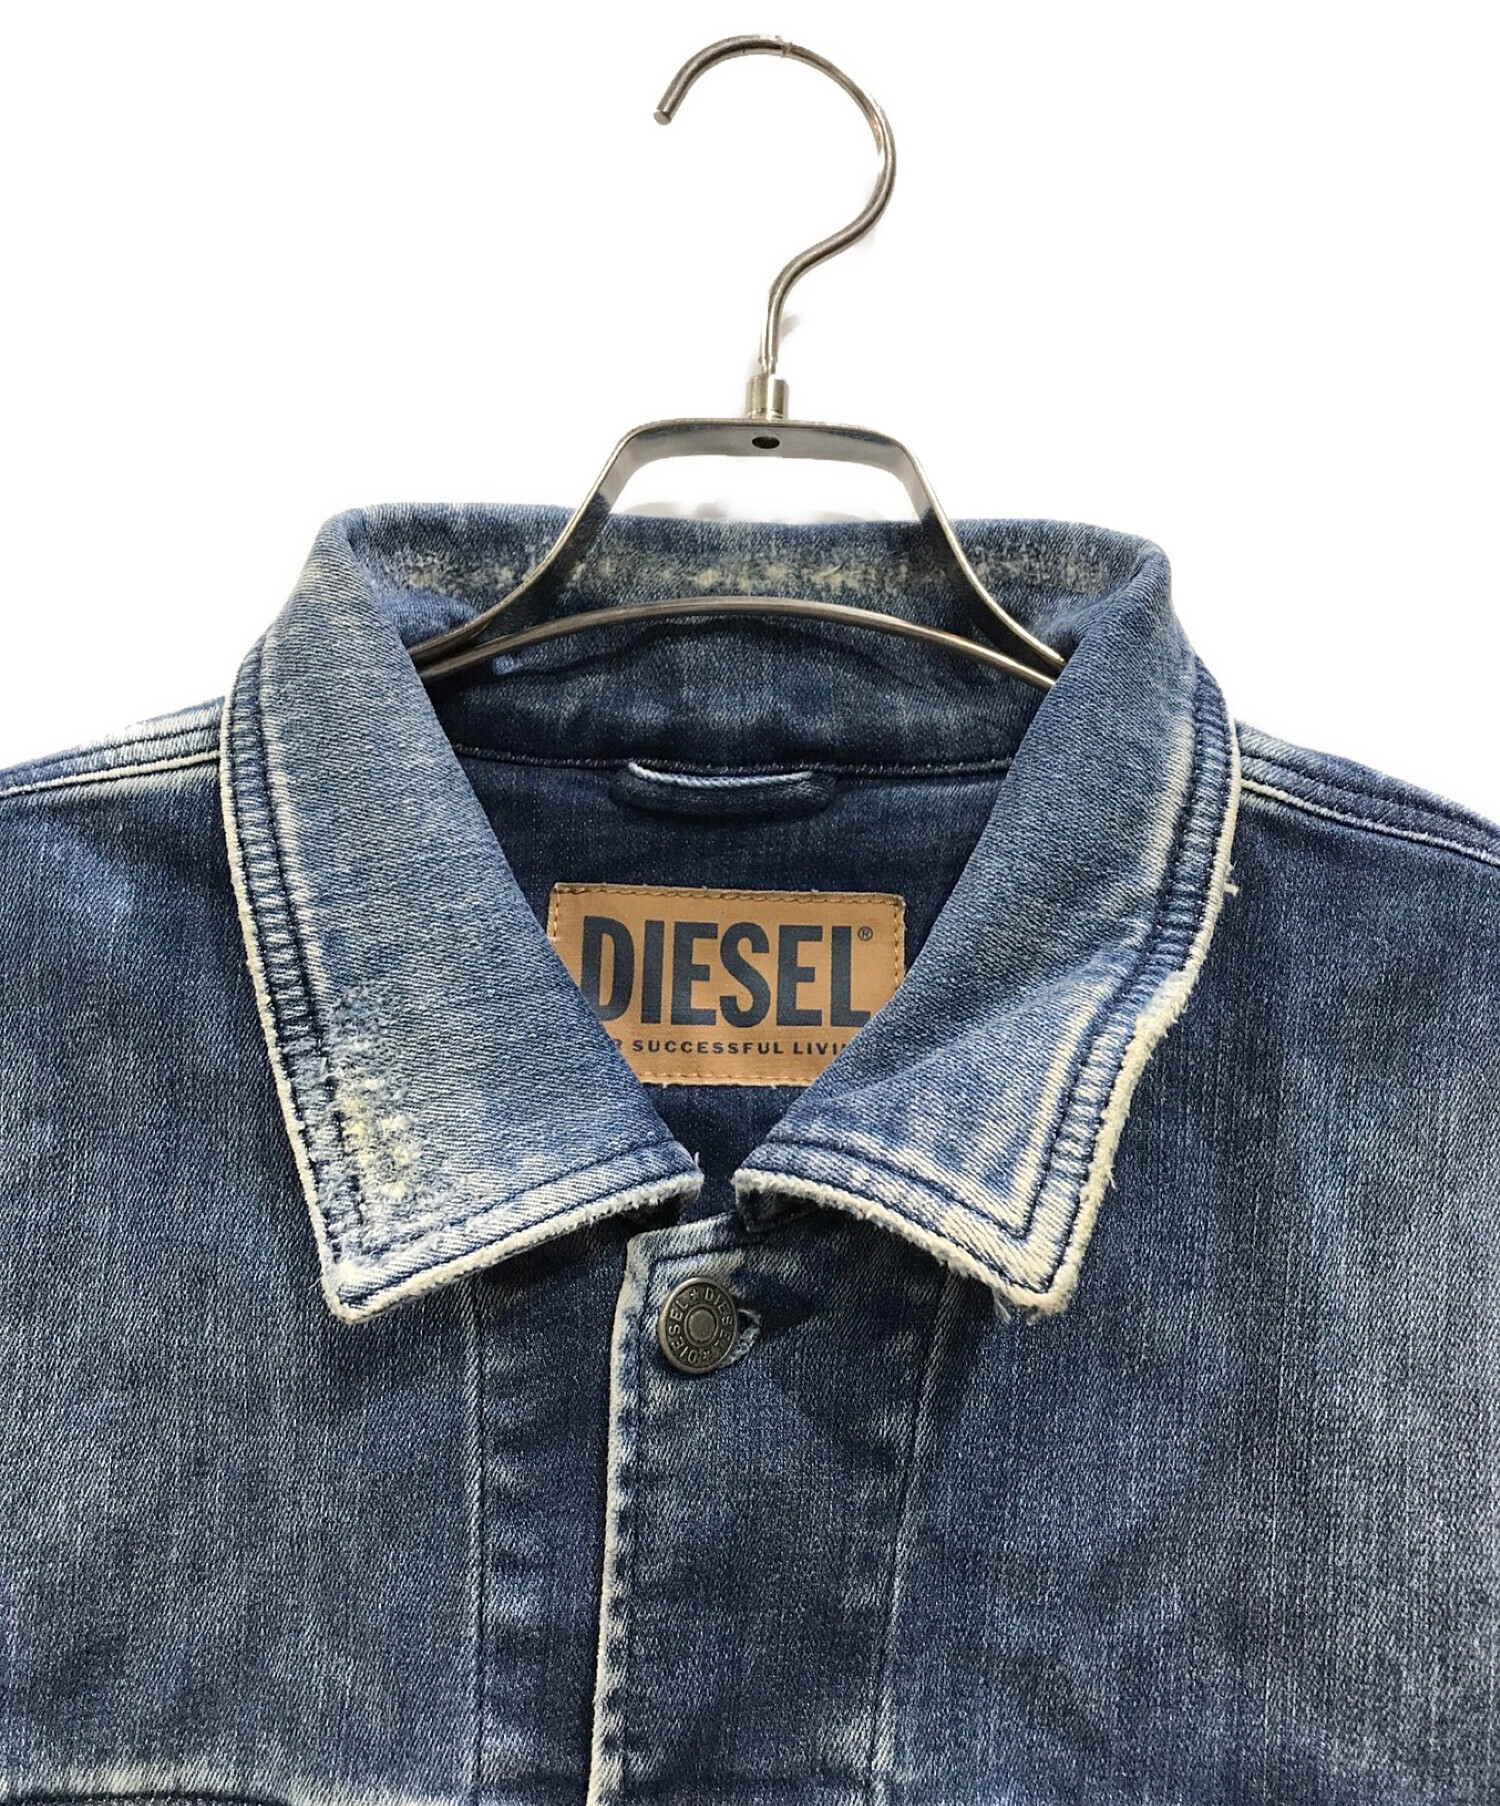 DIESEL (ディーゼル) ヴィンテージ加工デニムジャケット ブルー サイズ:XL